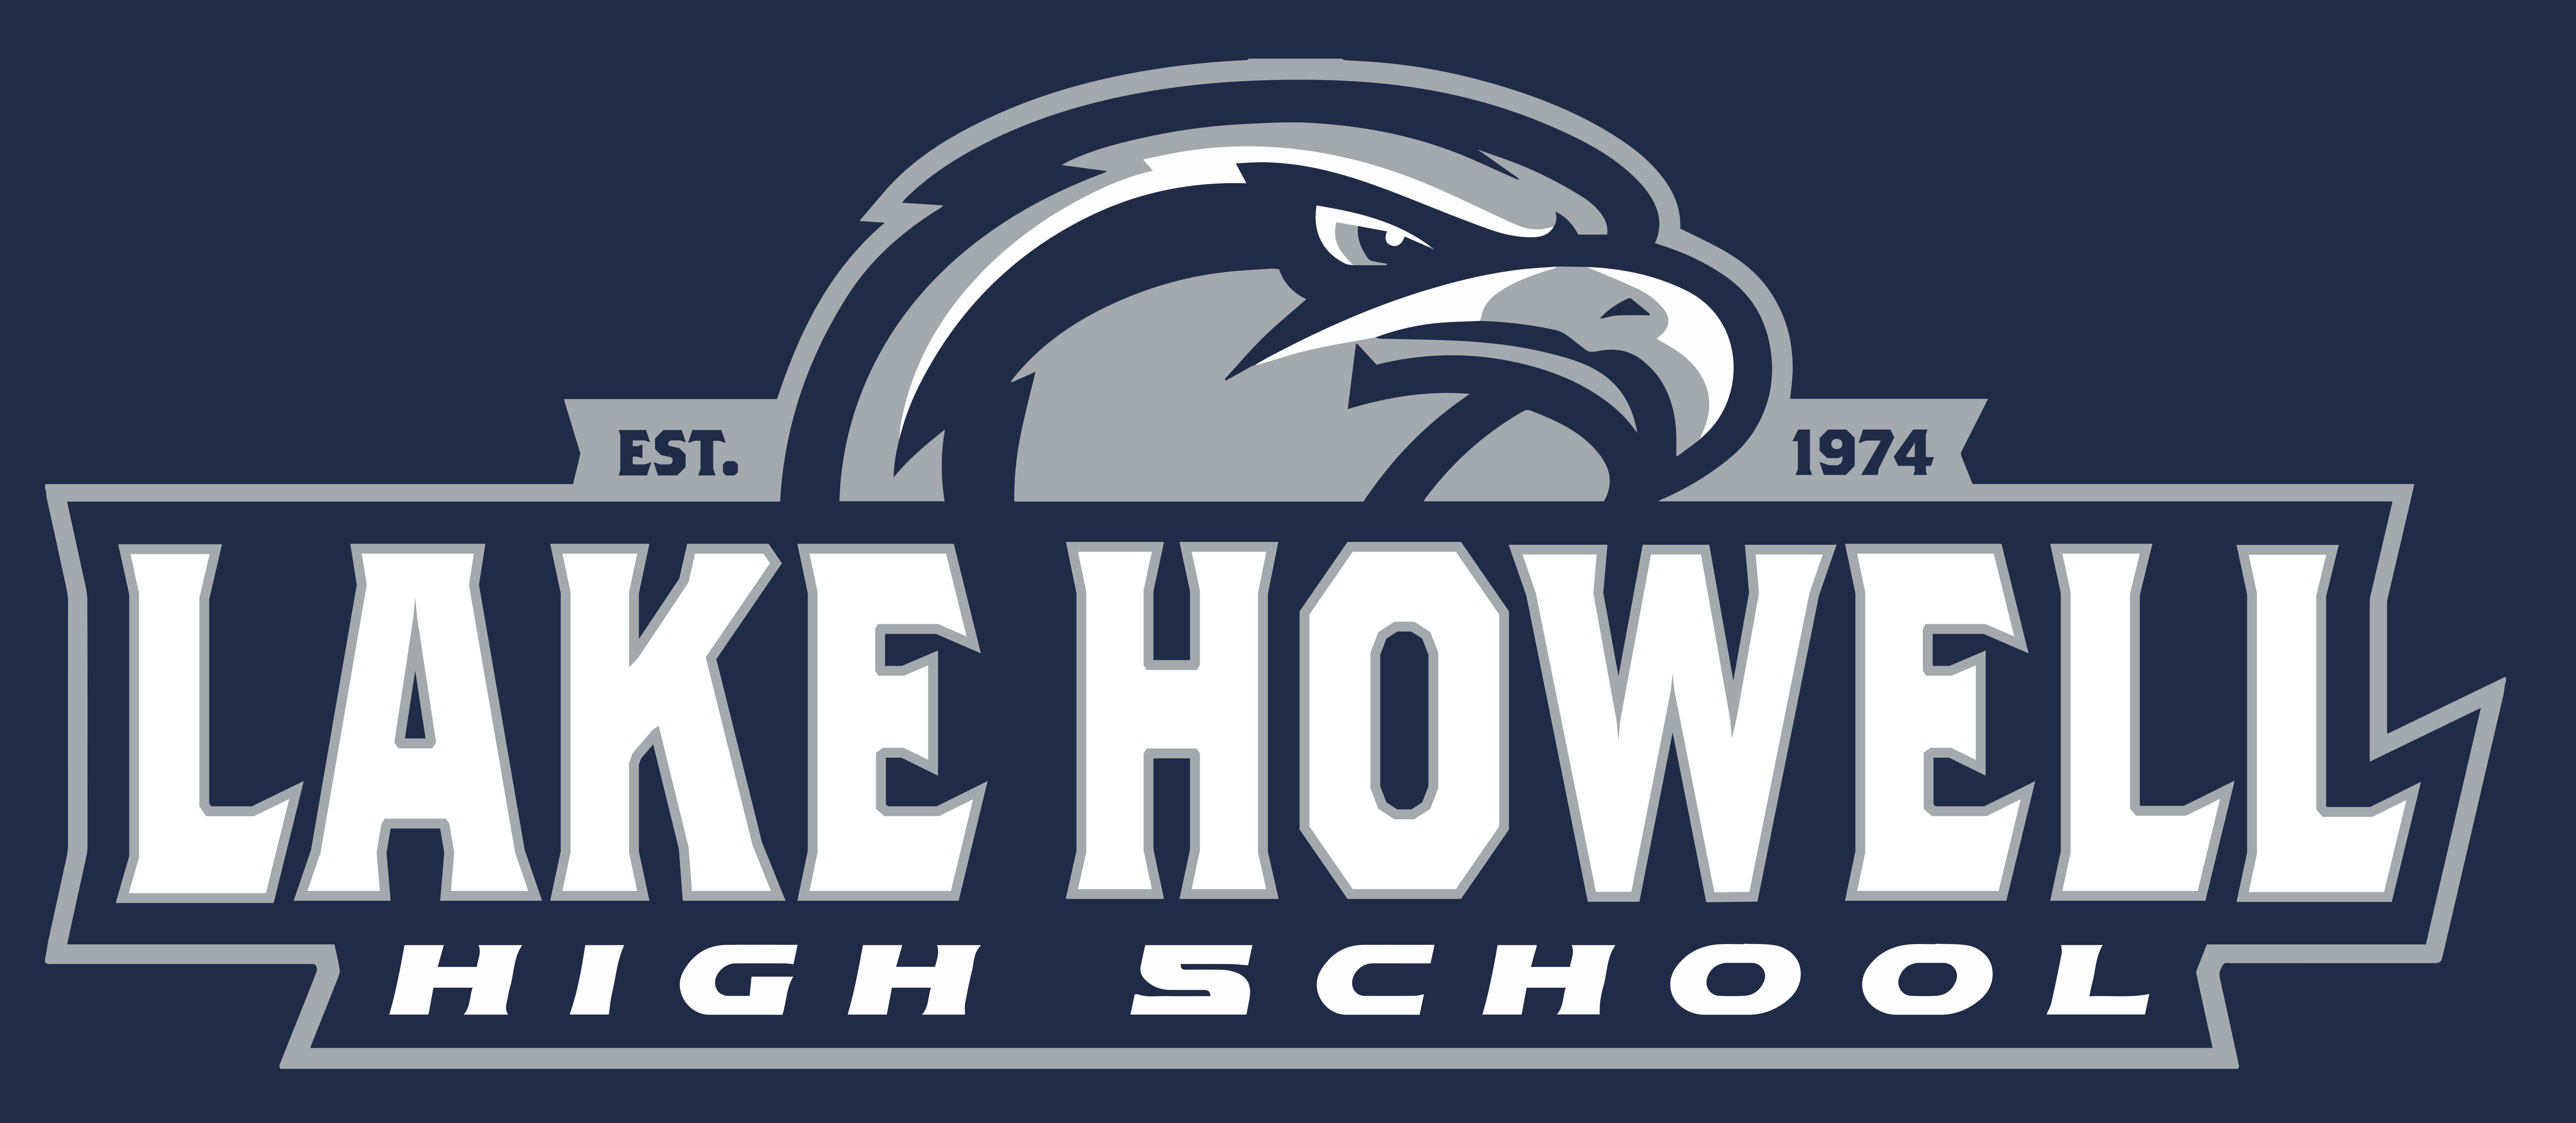 Lake Howell High School